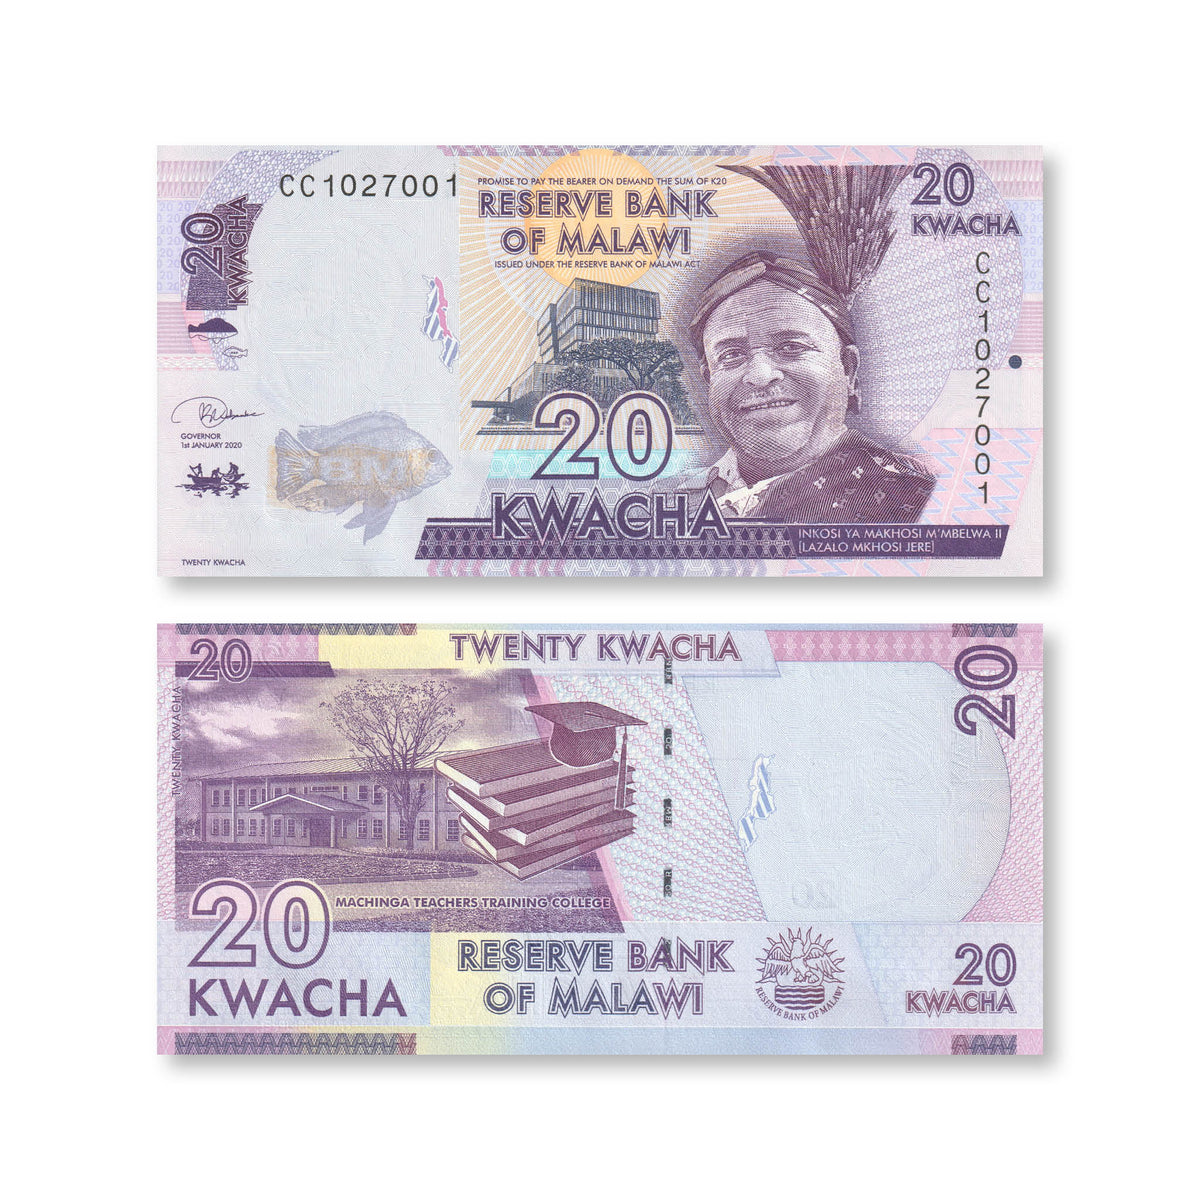 Malawi 20 Kwacha, 2020, B157f, P63, UNC - Robert's World Money - World Banknotes